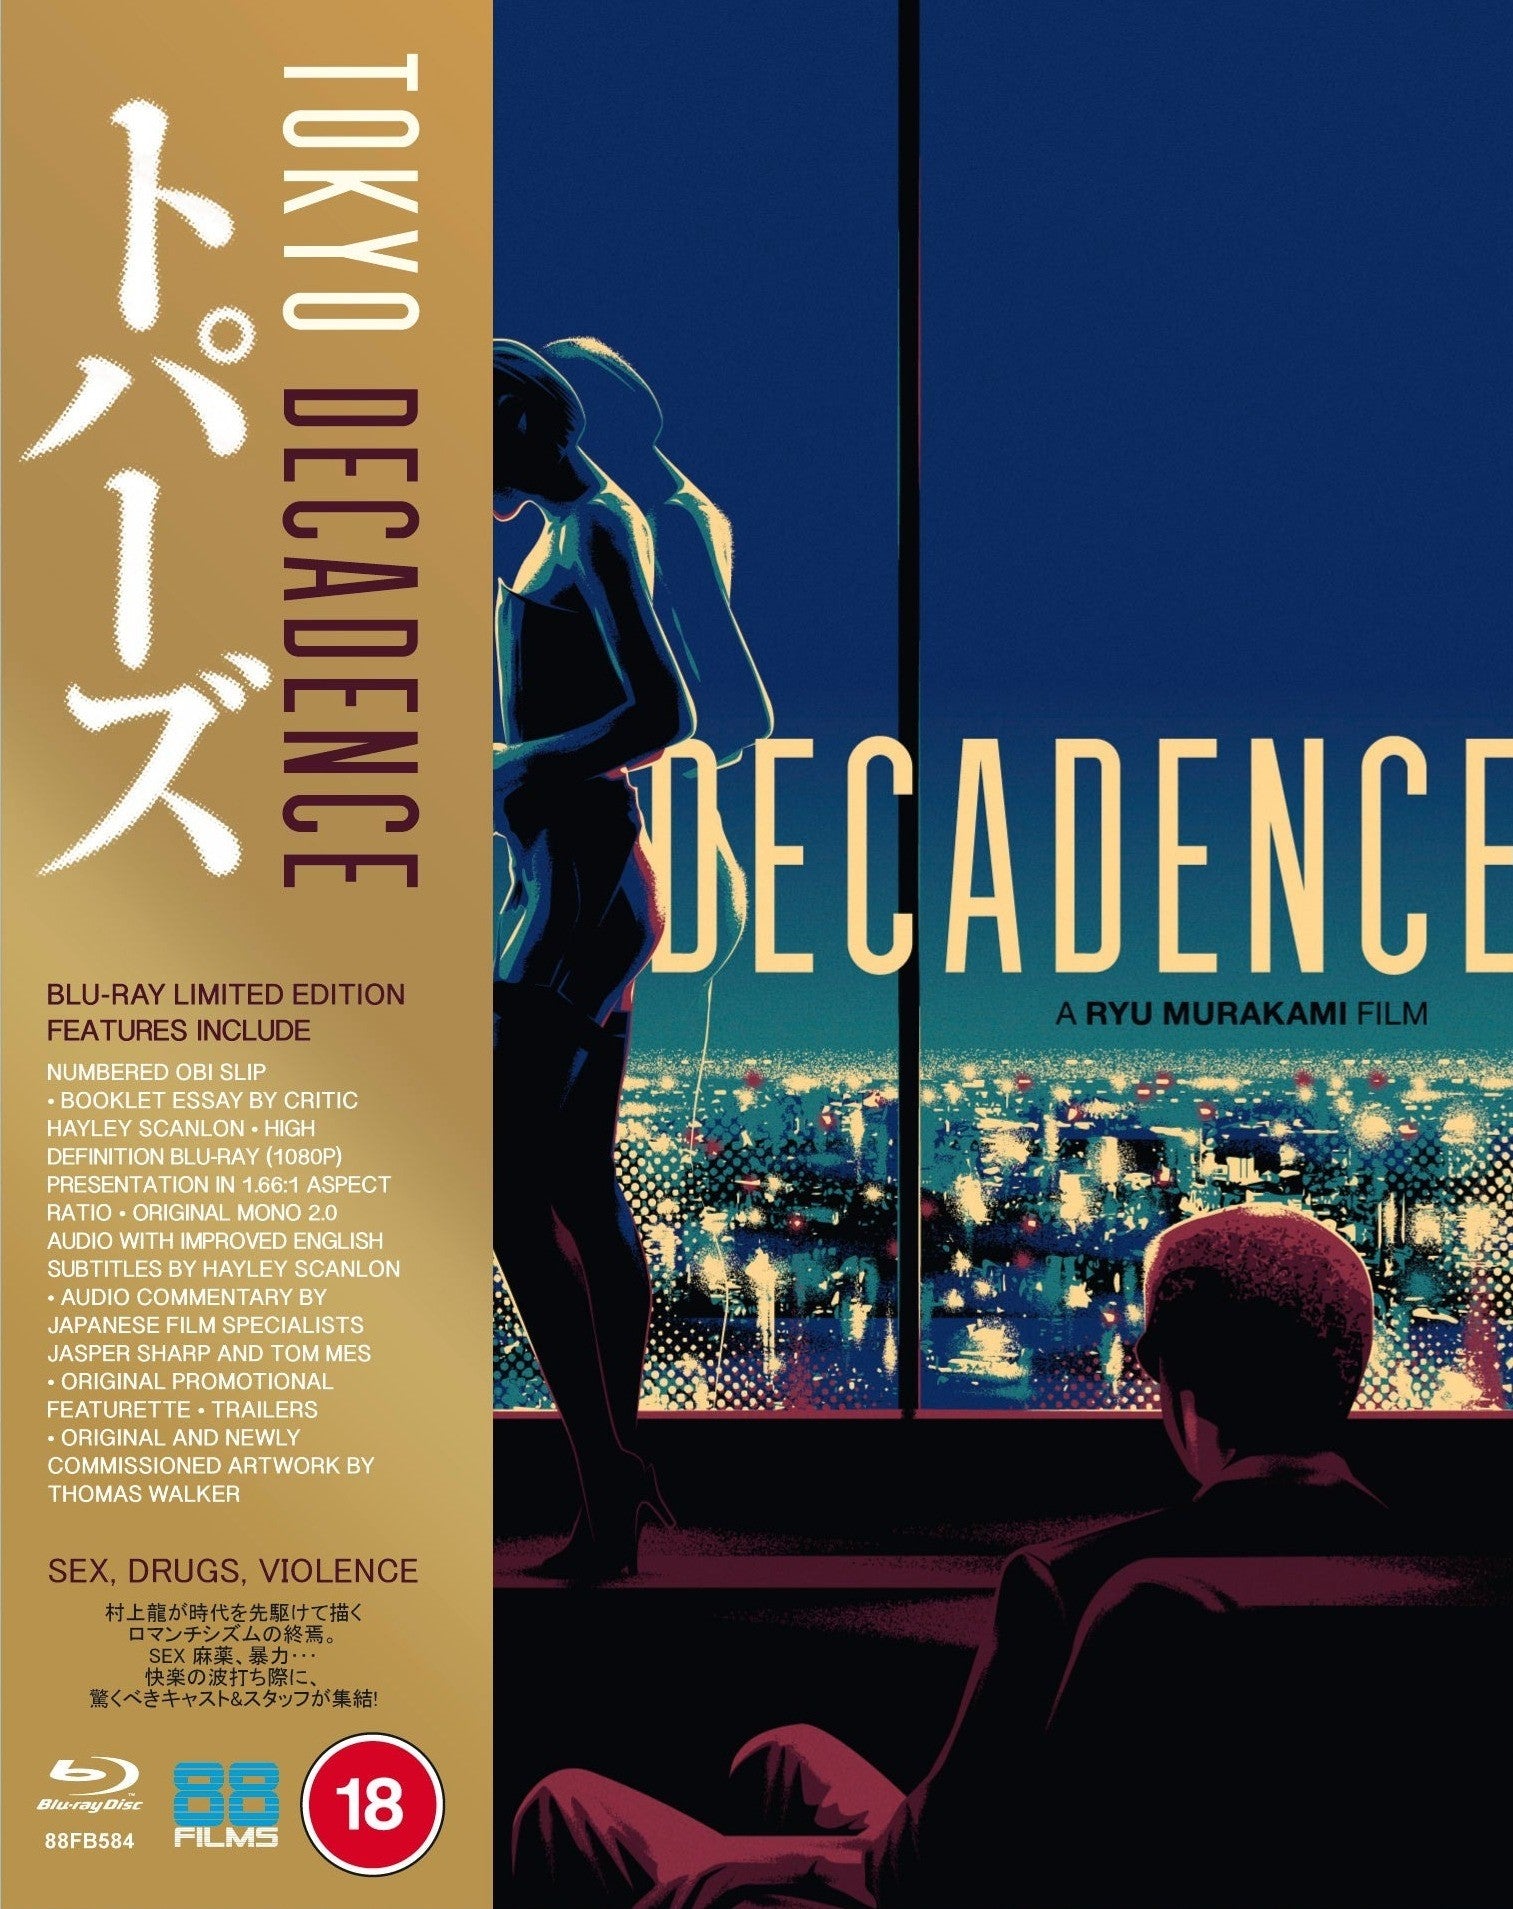 TOKYO DECADENCE (REGION B IMPORT - LIMITED EDITION) BLU-RAY